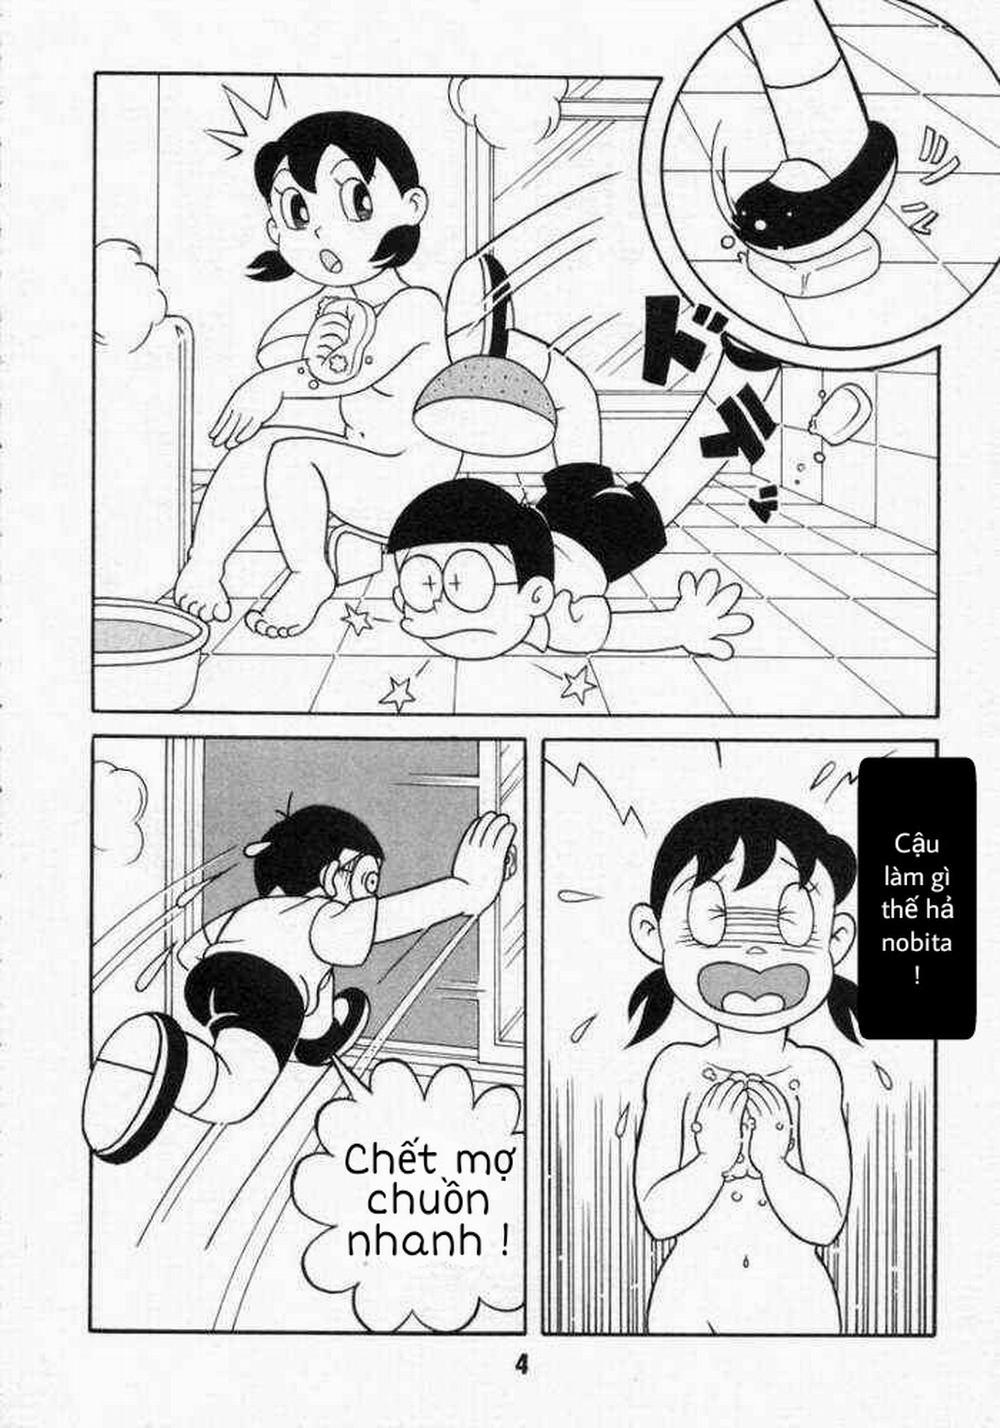 Tuyển Tập Doraemon Doujinshi 18+ Chương 10 Xuka v m t ng h nh Trang 2